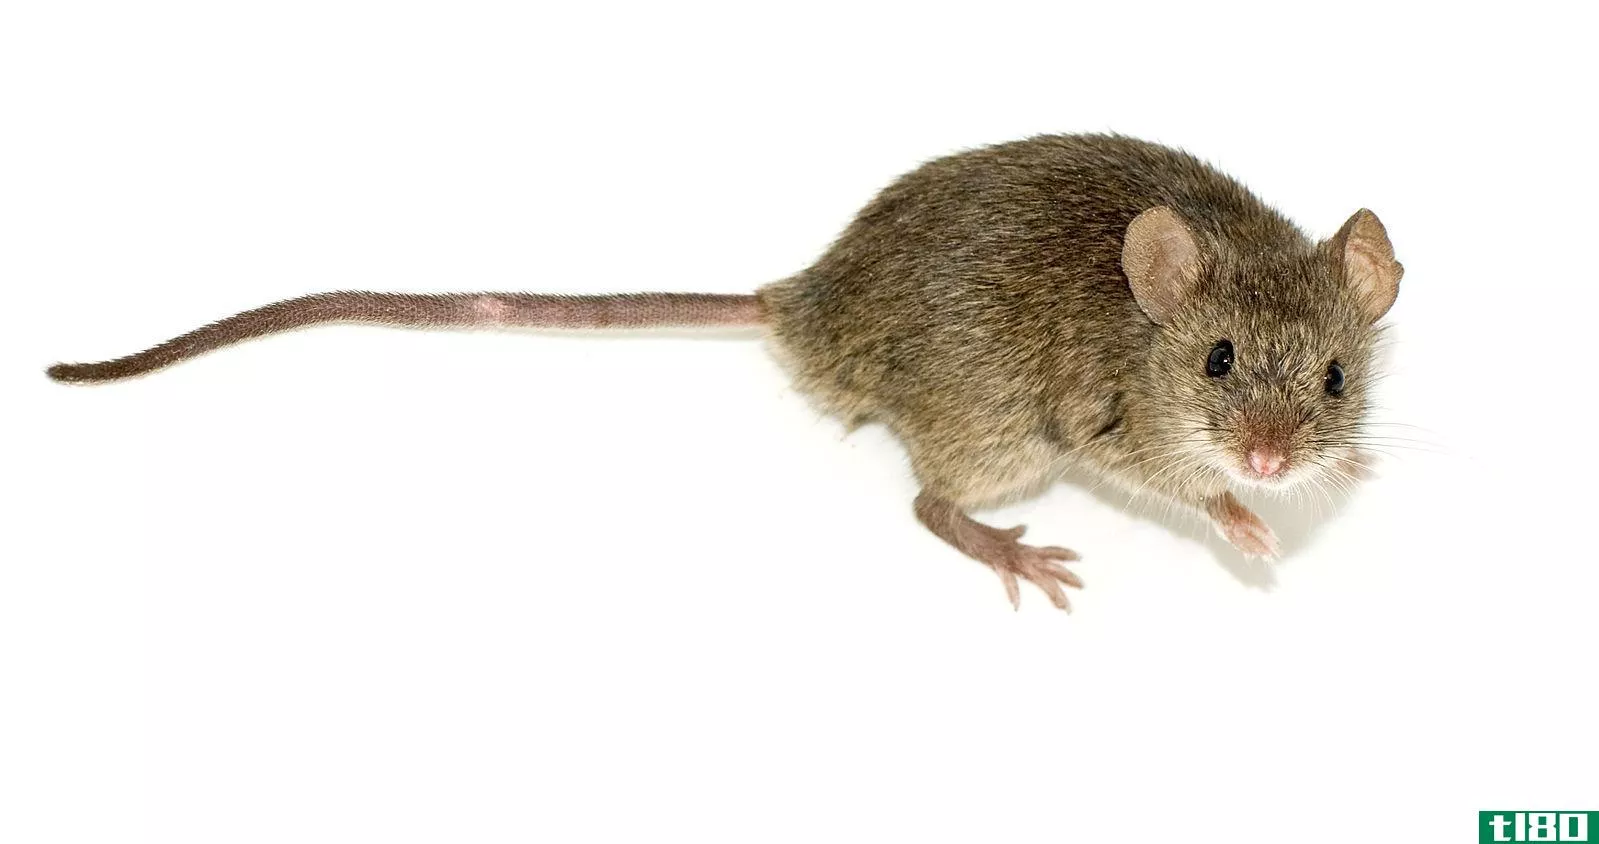 老鼠屎(mouse poop)和老鼠屎(rat poop)的区别